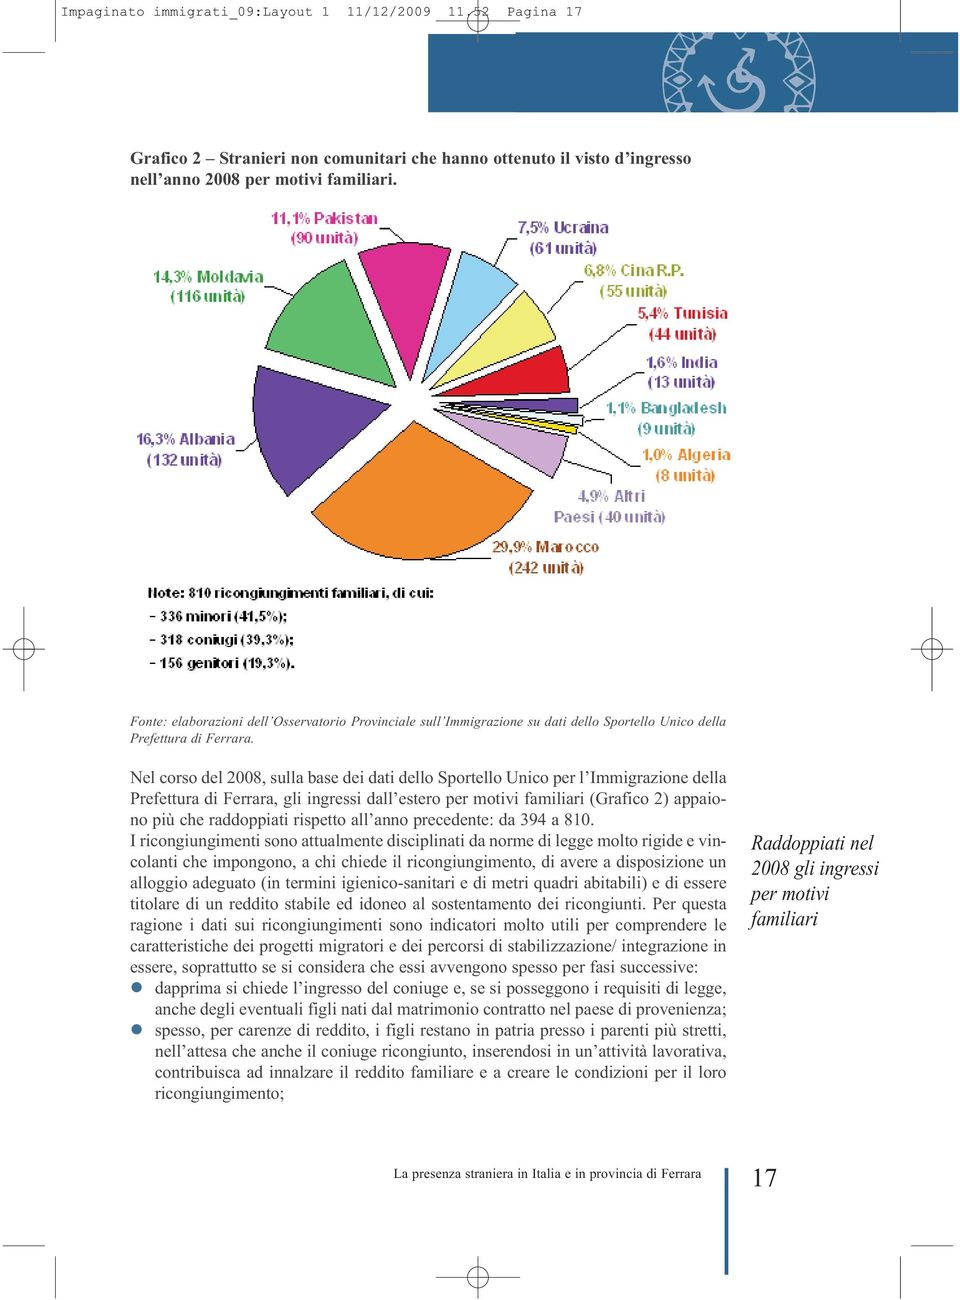 Nel corso del 2008, sulla base dei dati dello Sportello Unico per l Immigrazione della Prefettura di Ferrara, gli ingressi dall estero per motivi familiari (Grafico 2) appaiono più che raddoppiati